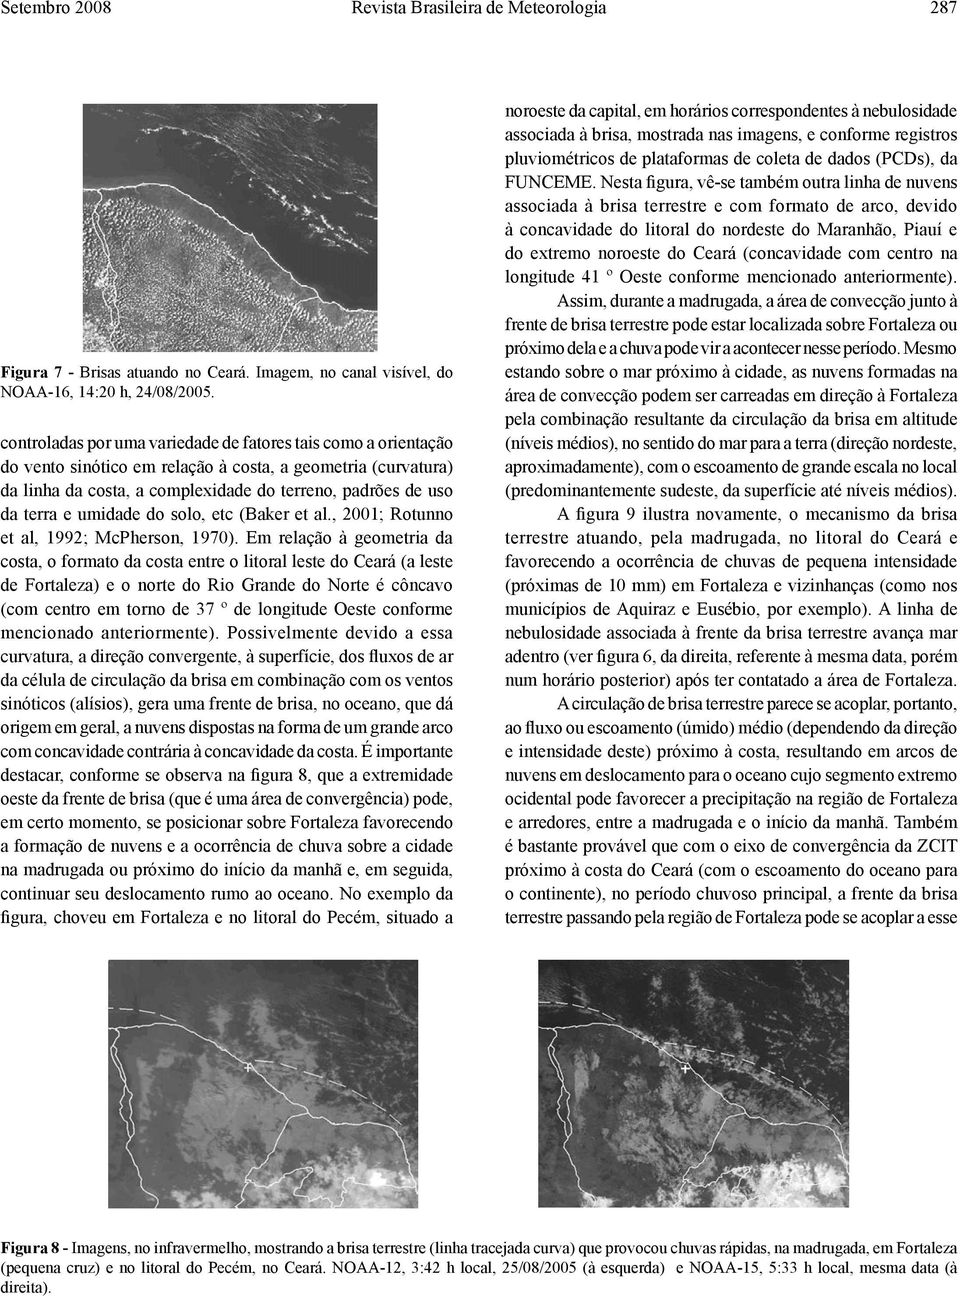 umidade do solo, etc (Baker et al., 2001; Rotunno et al, 1992; McPherson, 1970).